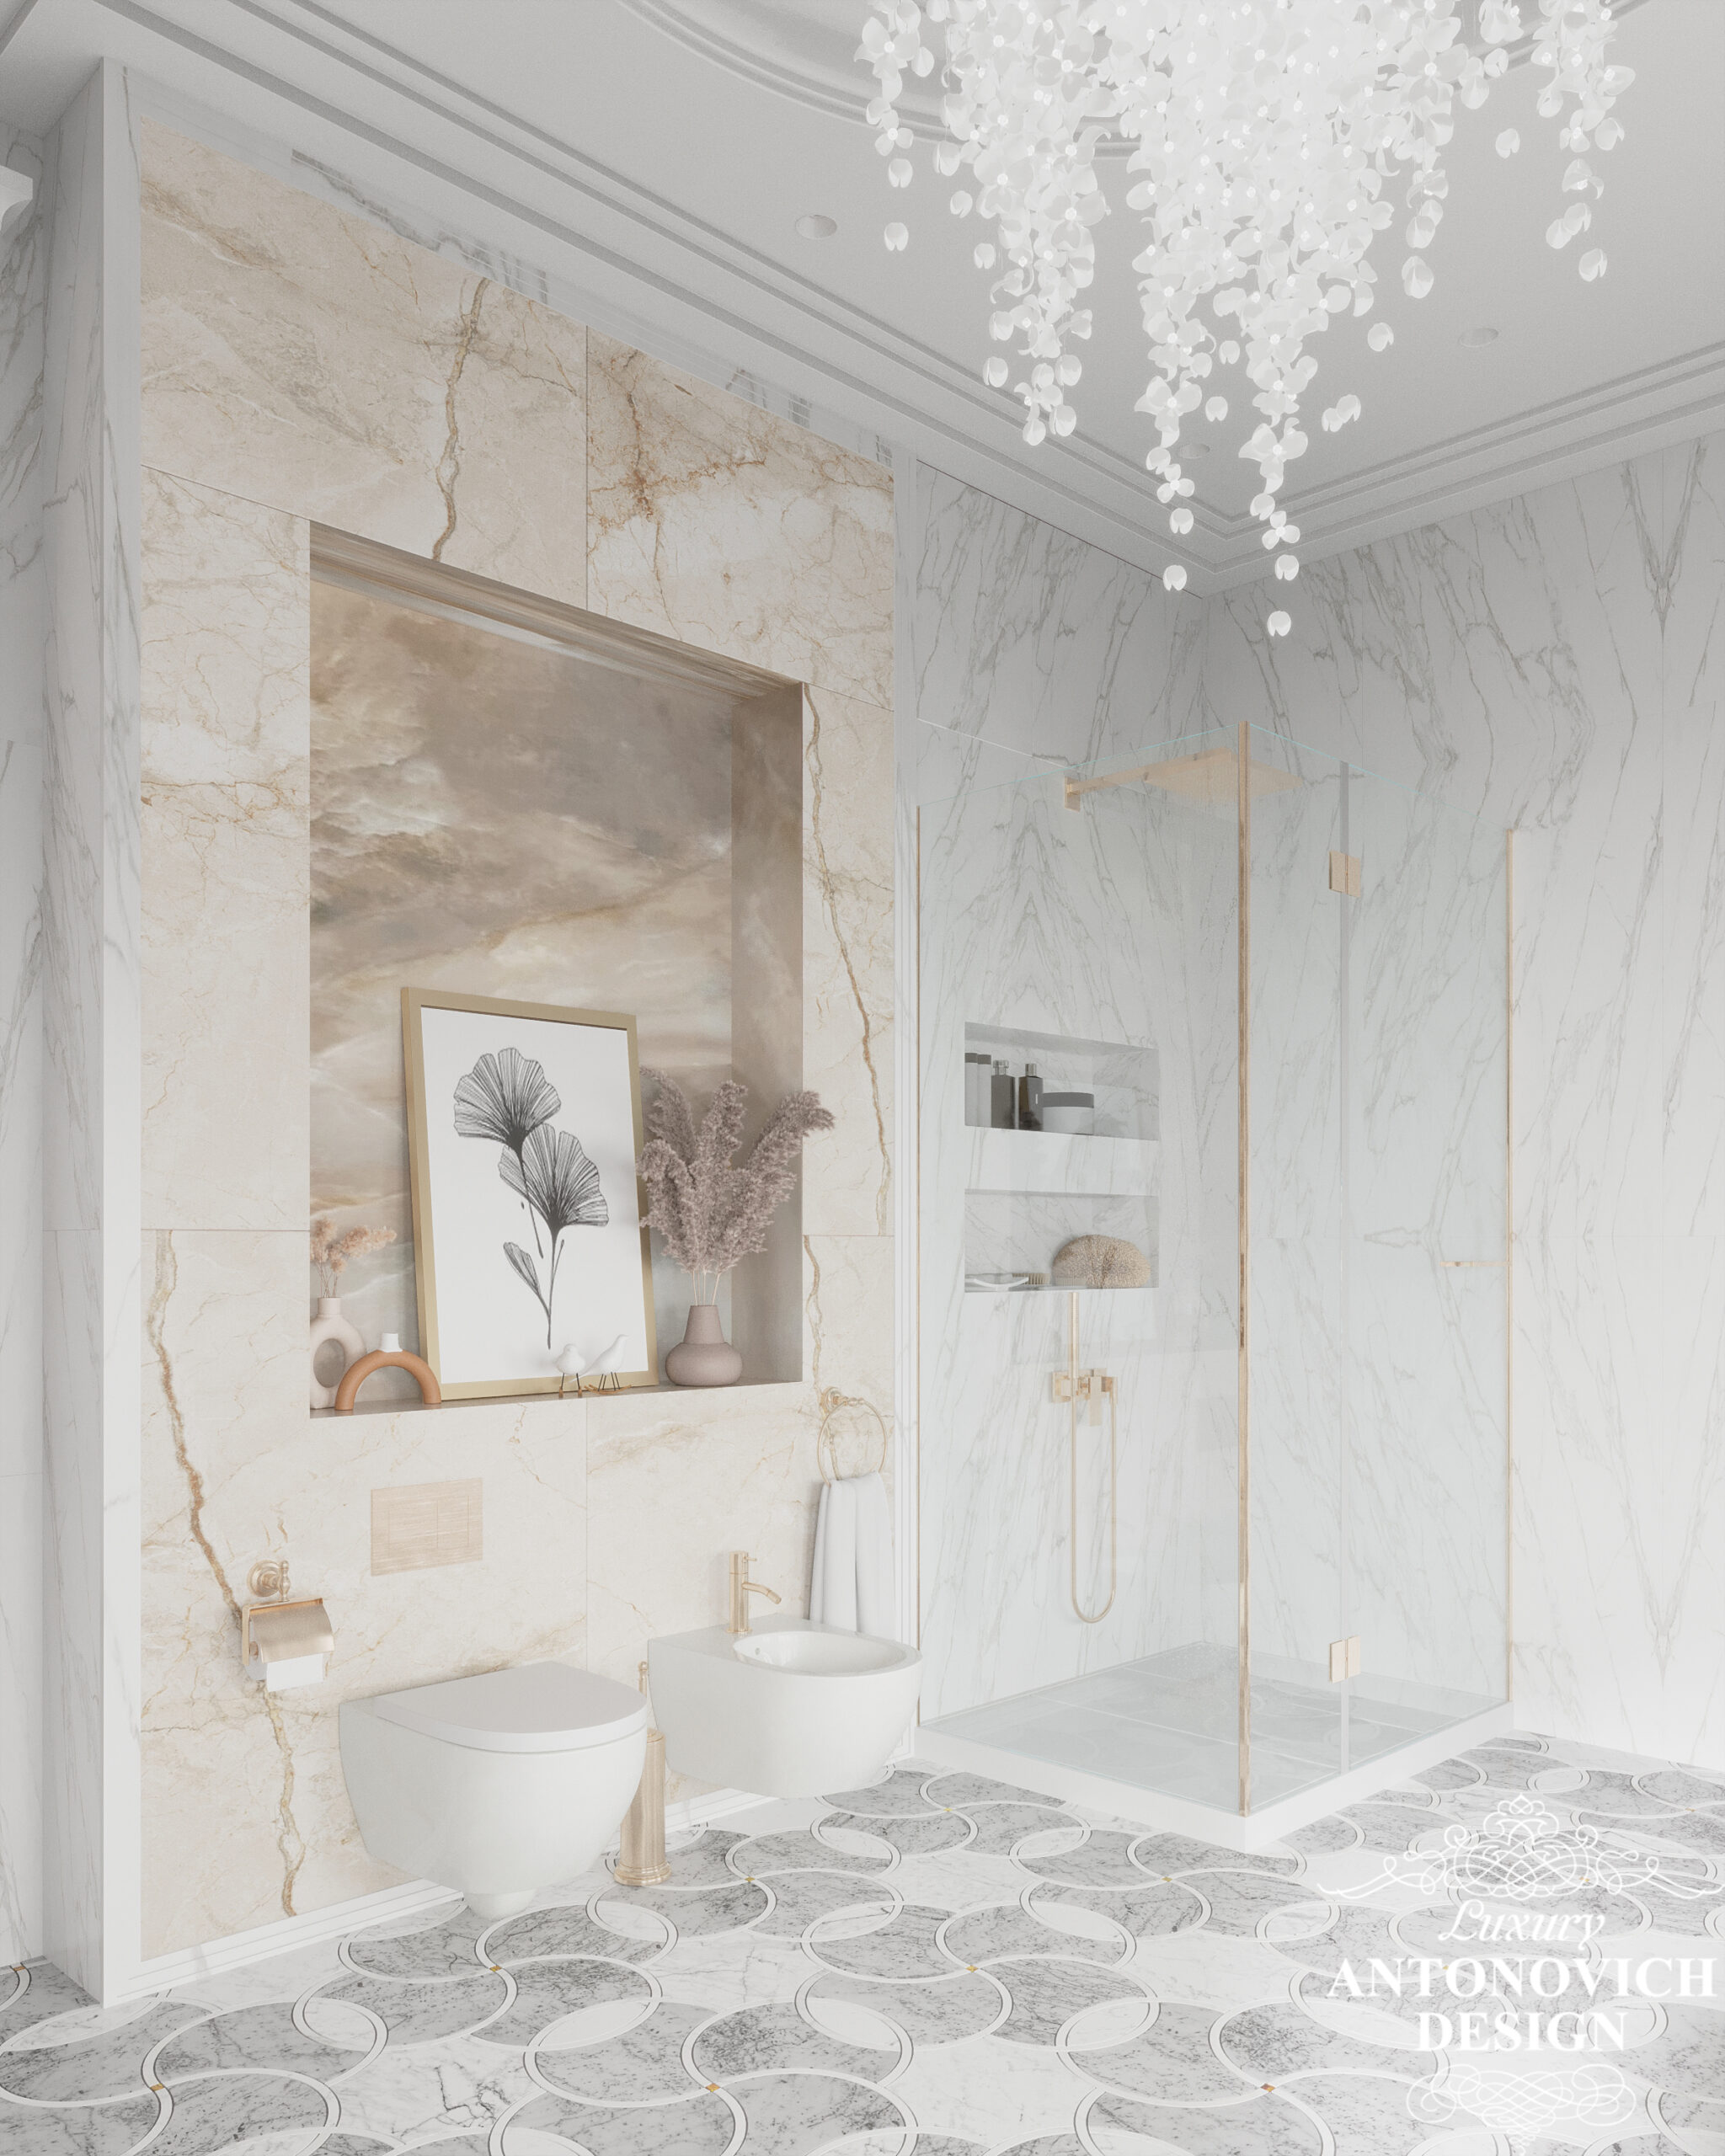 Оригінальна дизайнерська підвісна люстра, мармурова підлога, авторський декор в інтер'єрі елегантною ванної кімнати. Дизайн ванної для сім'ї в приватному будинку